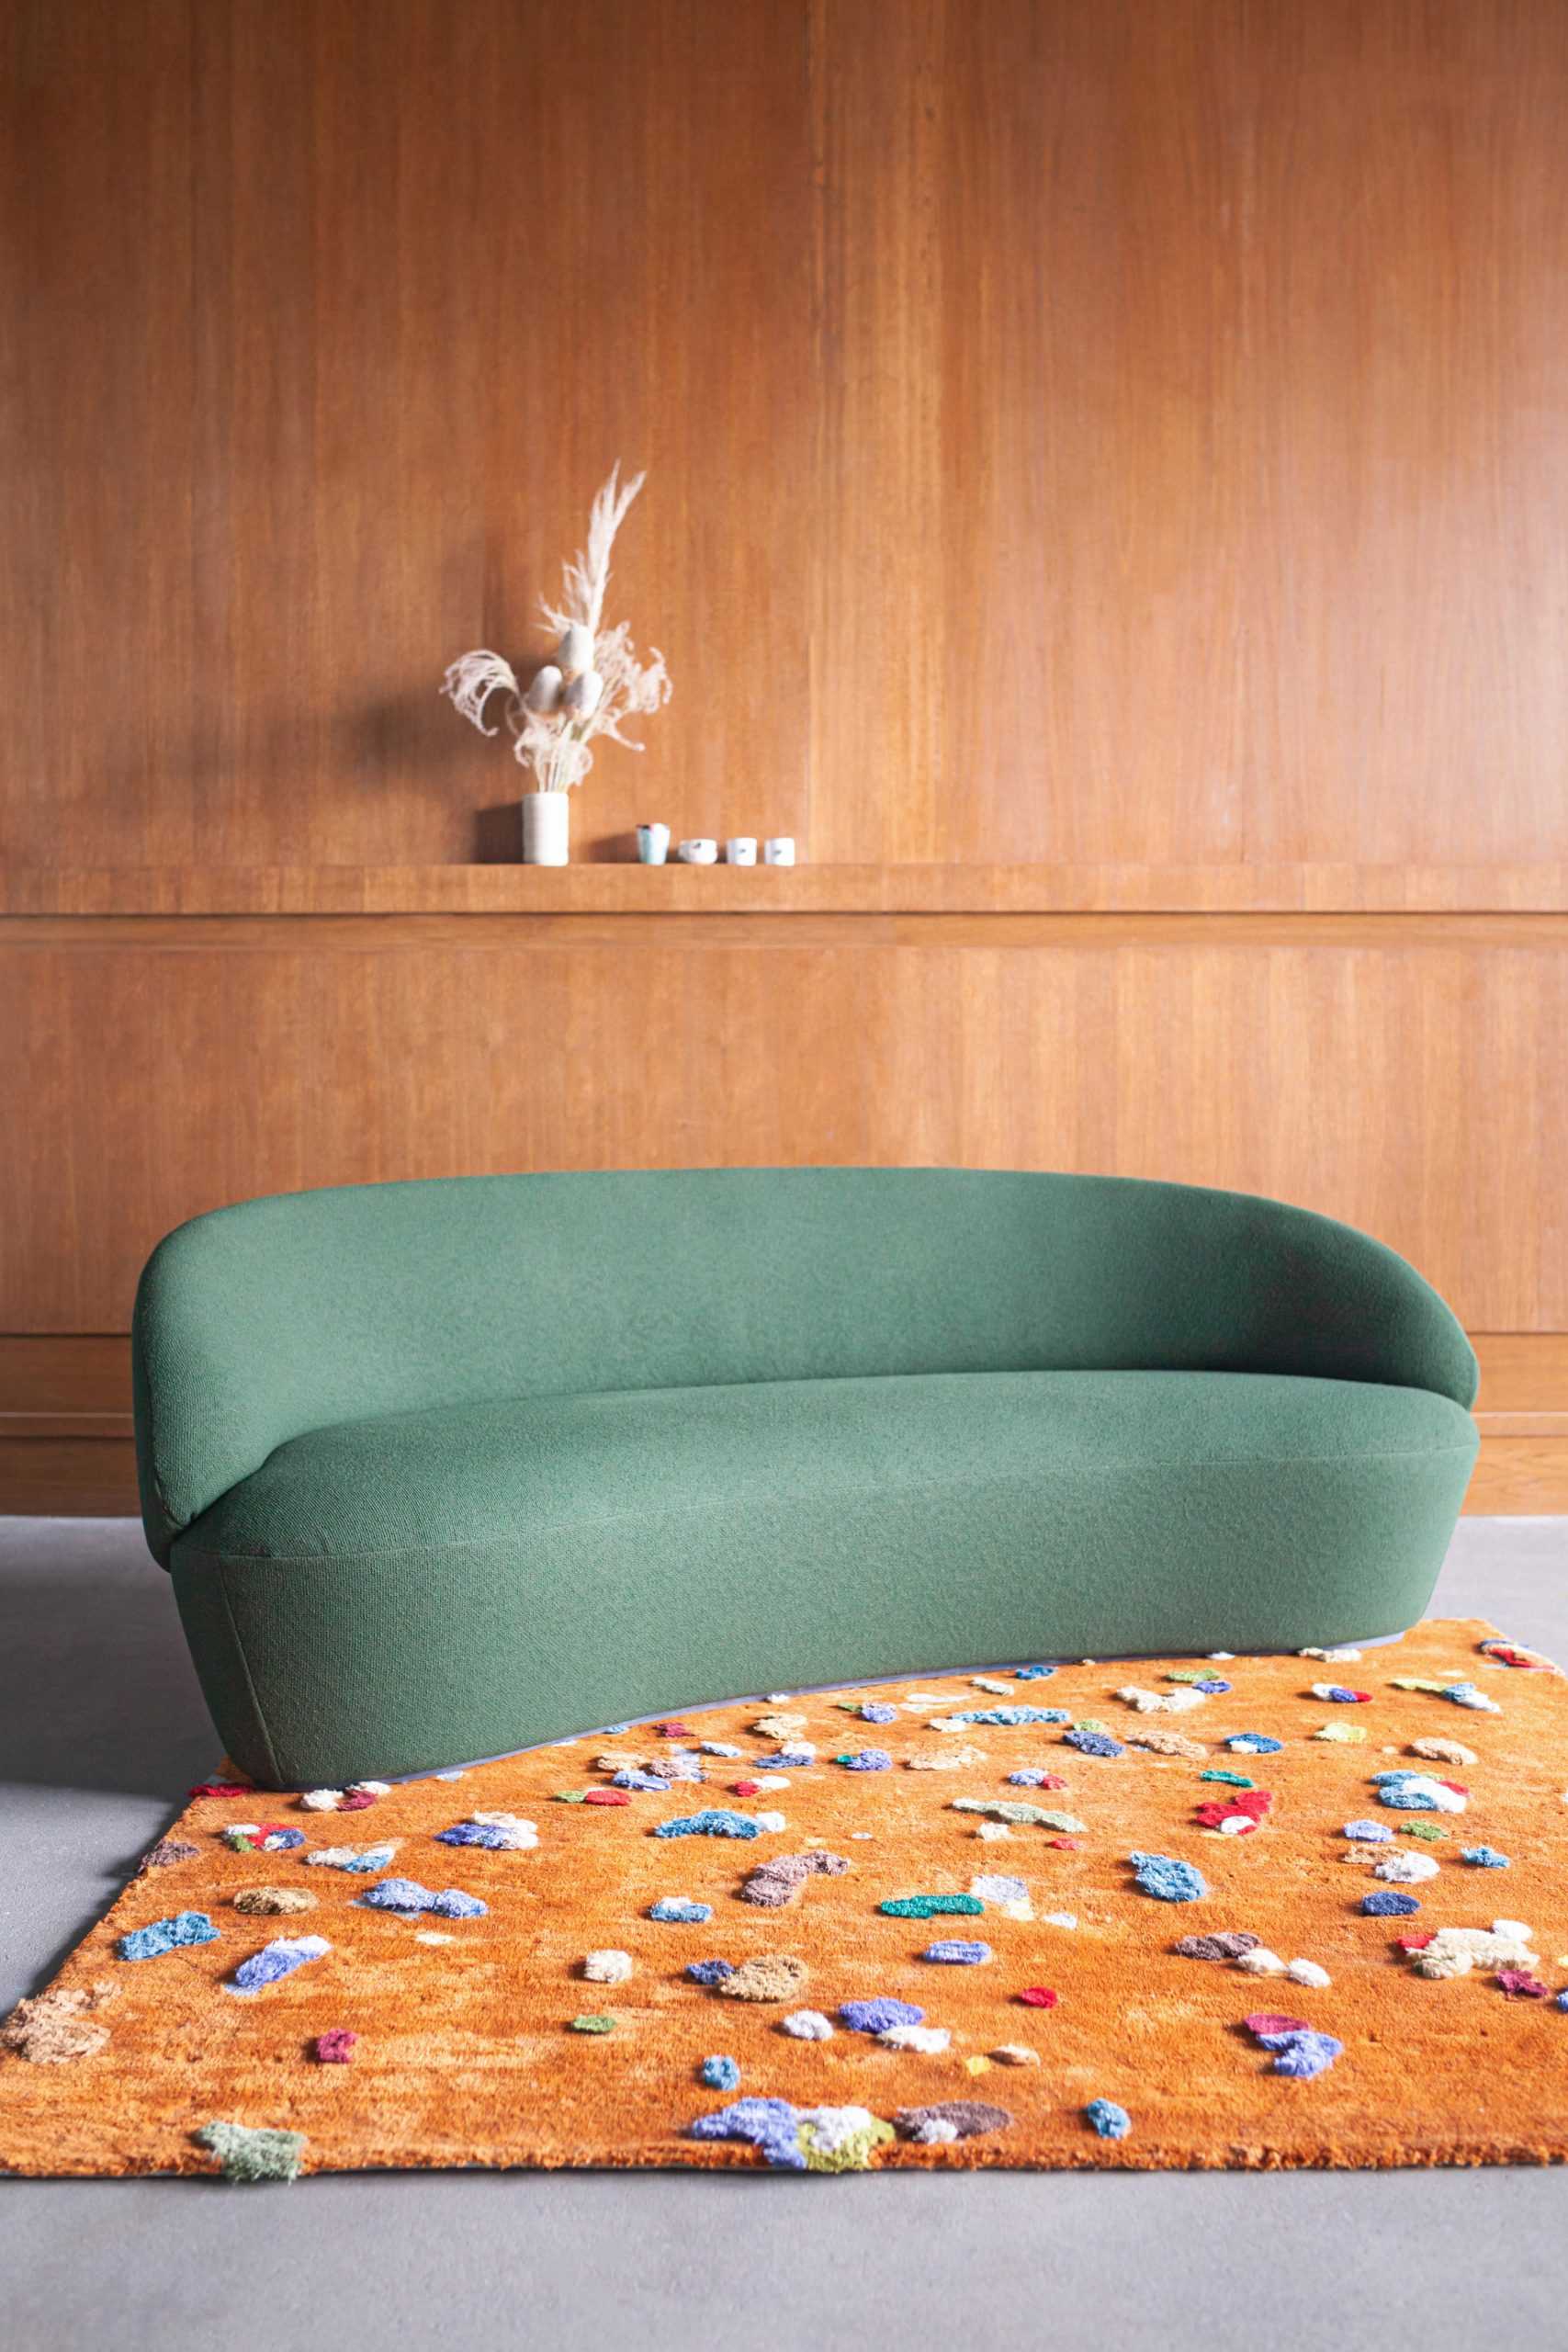 EMKO使用亚麻布边料来创造充满活力的五彩纸屑图案的Chaos地毯